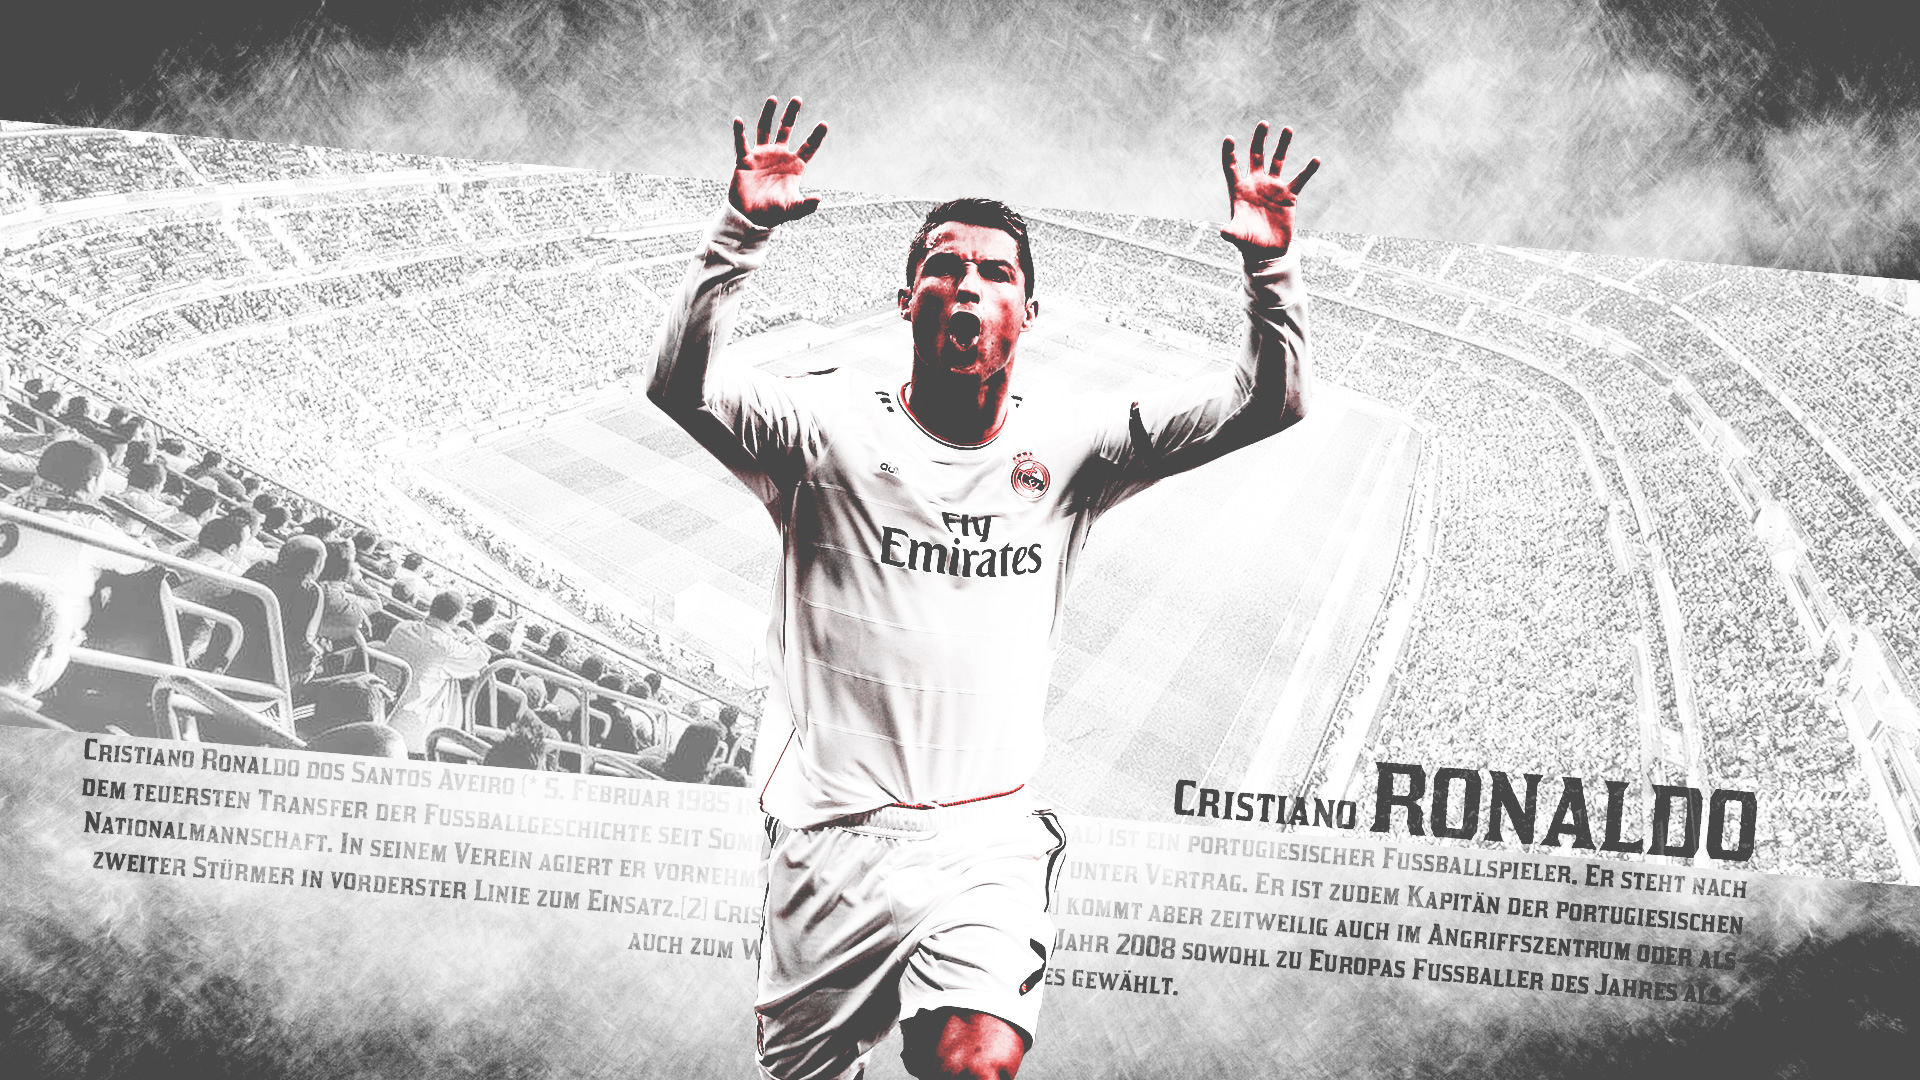 Cristiano Ronaldo Wallpapers - Cristiano Ronaldo Wallpaper 2014 - HD Wallpaper 